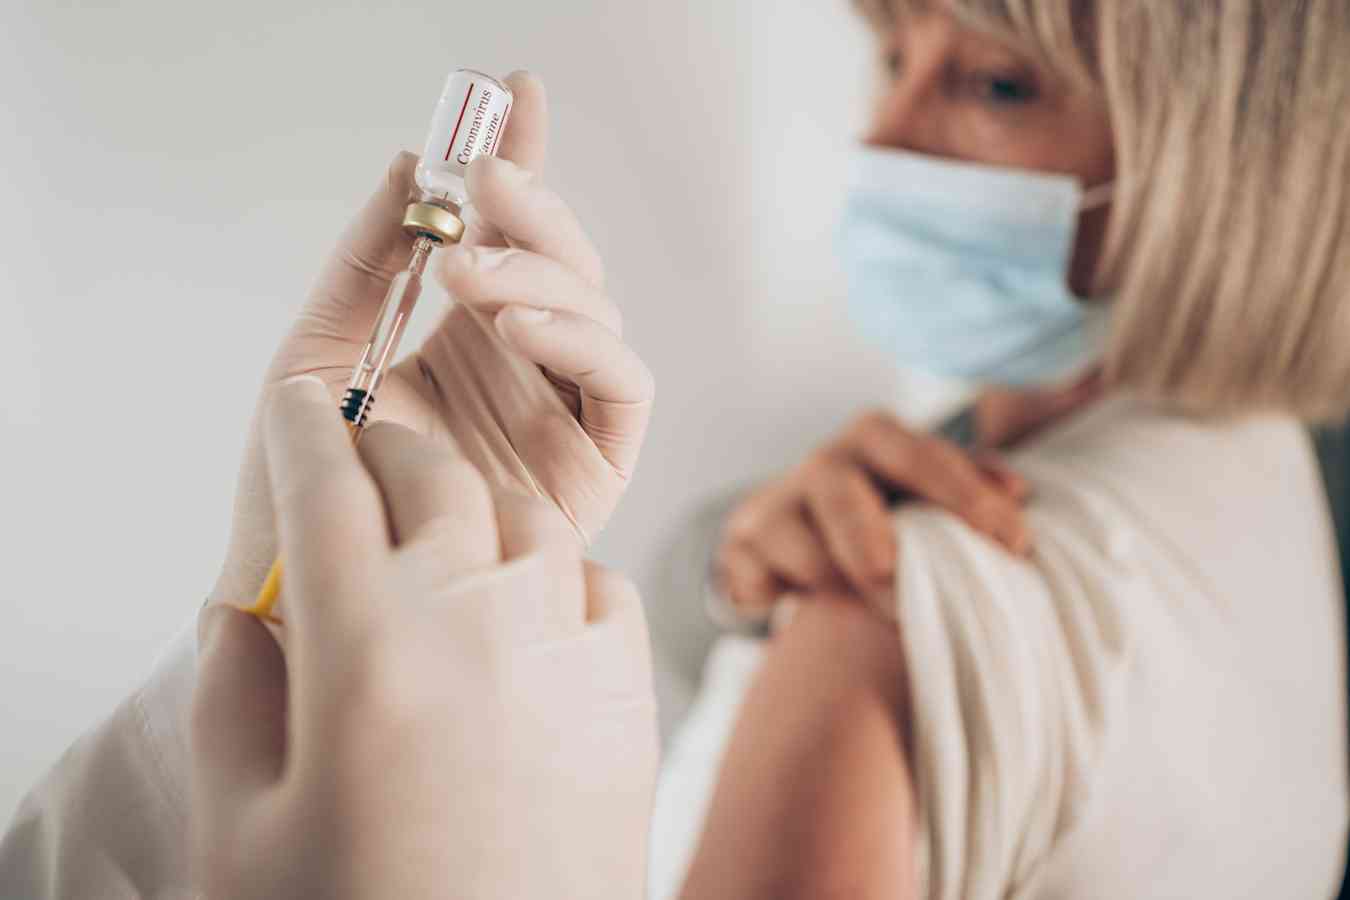 Καρκίνος τραχήλου της μήτρας: Ο HPV εμβολιασμός και το Εθνικό Πρόγραμμα Προσυμπτωματικού Ελέγχου των γυναικών θα οδηγήσουν στην εξάλειψη του